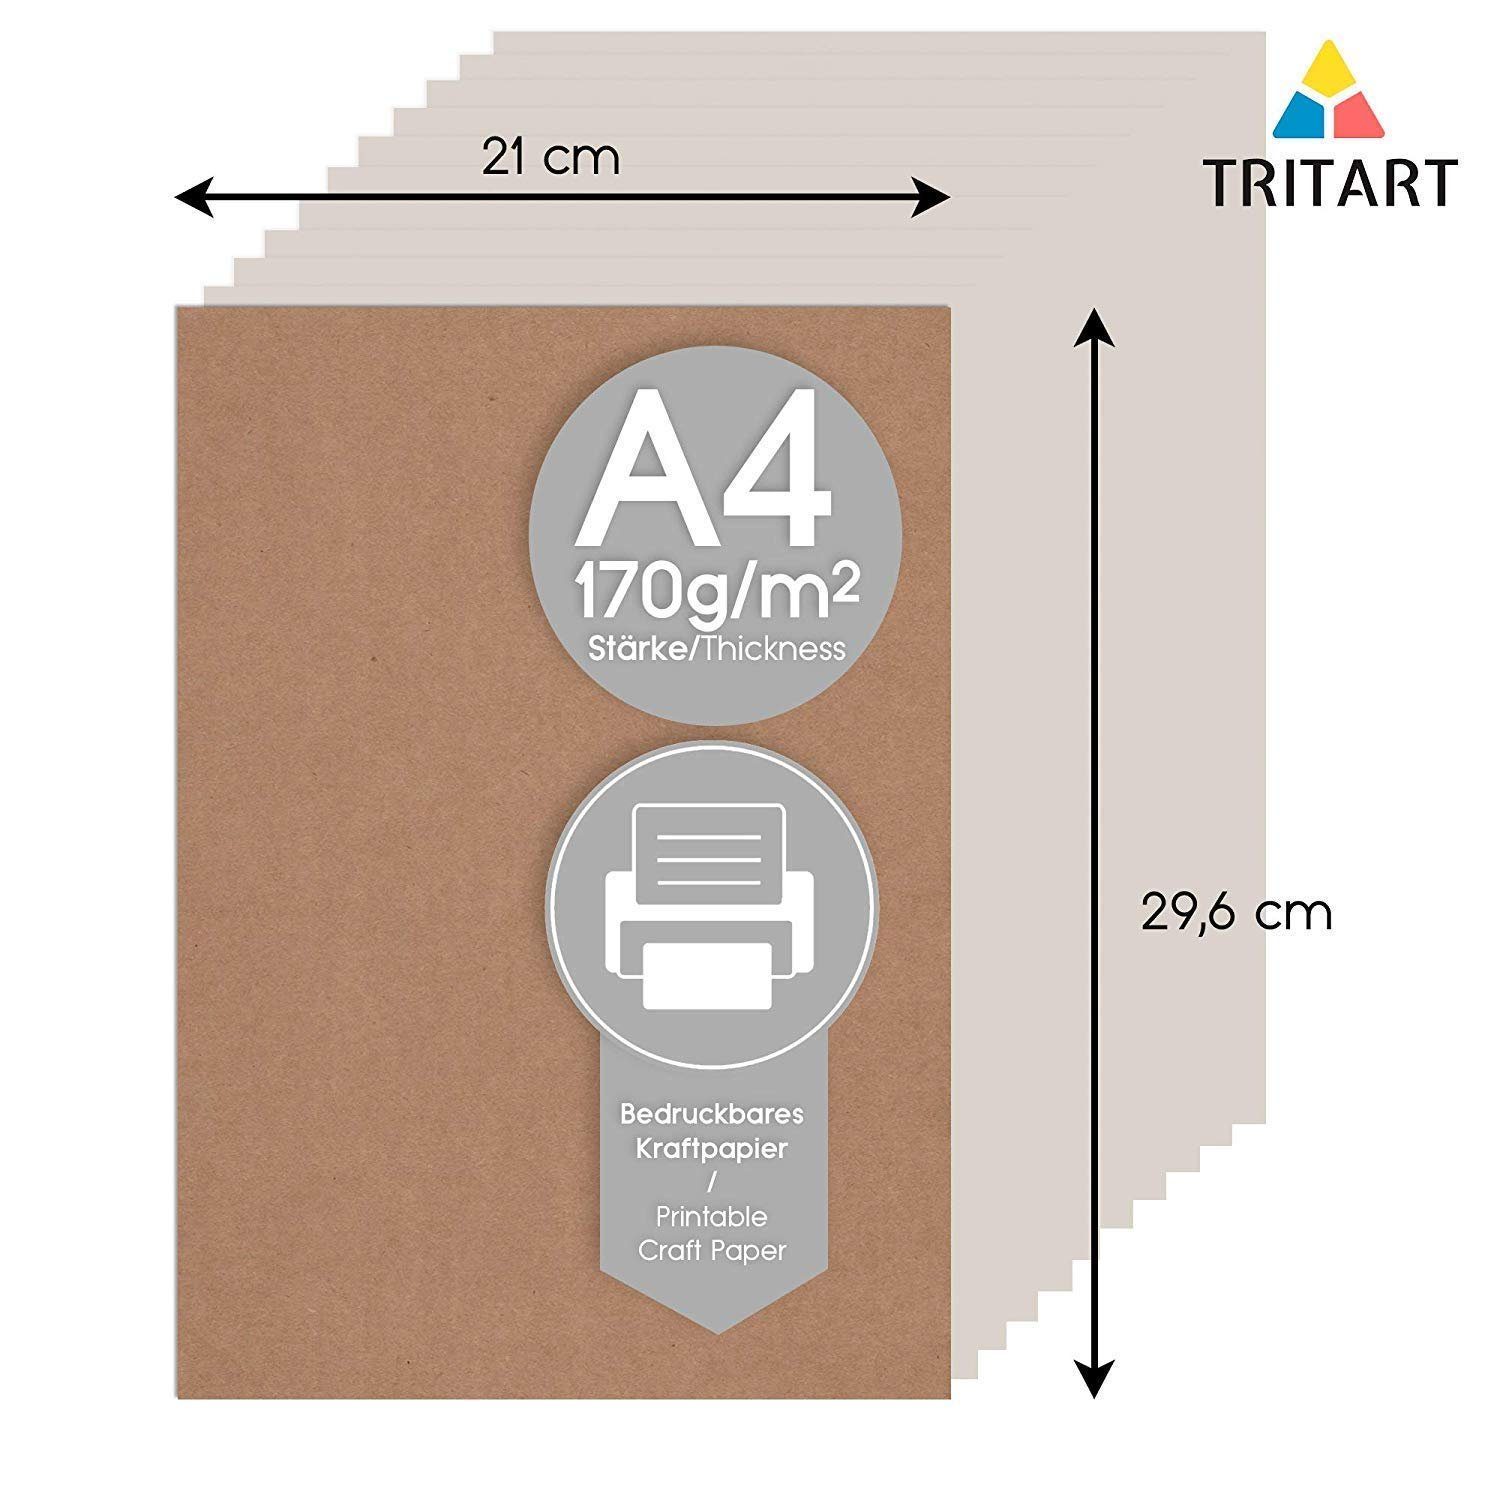 A4 Karton 55 55 Tritart Druckpapier zum Kraftpapier Kraftpapier Aquarellpapier A4 170g/m² Bedrucken Karton Blatt, Natur Blatt Natur 170g/m²